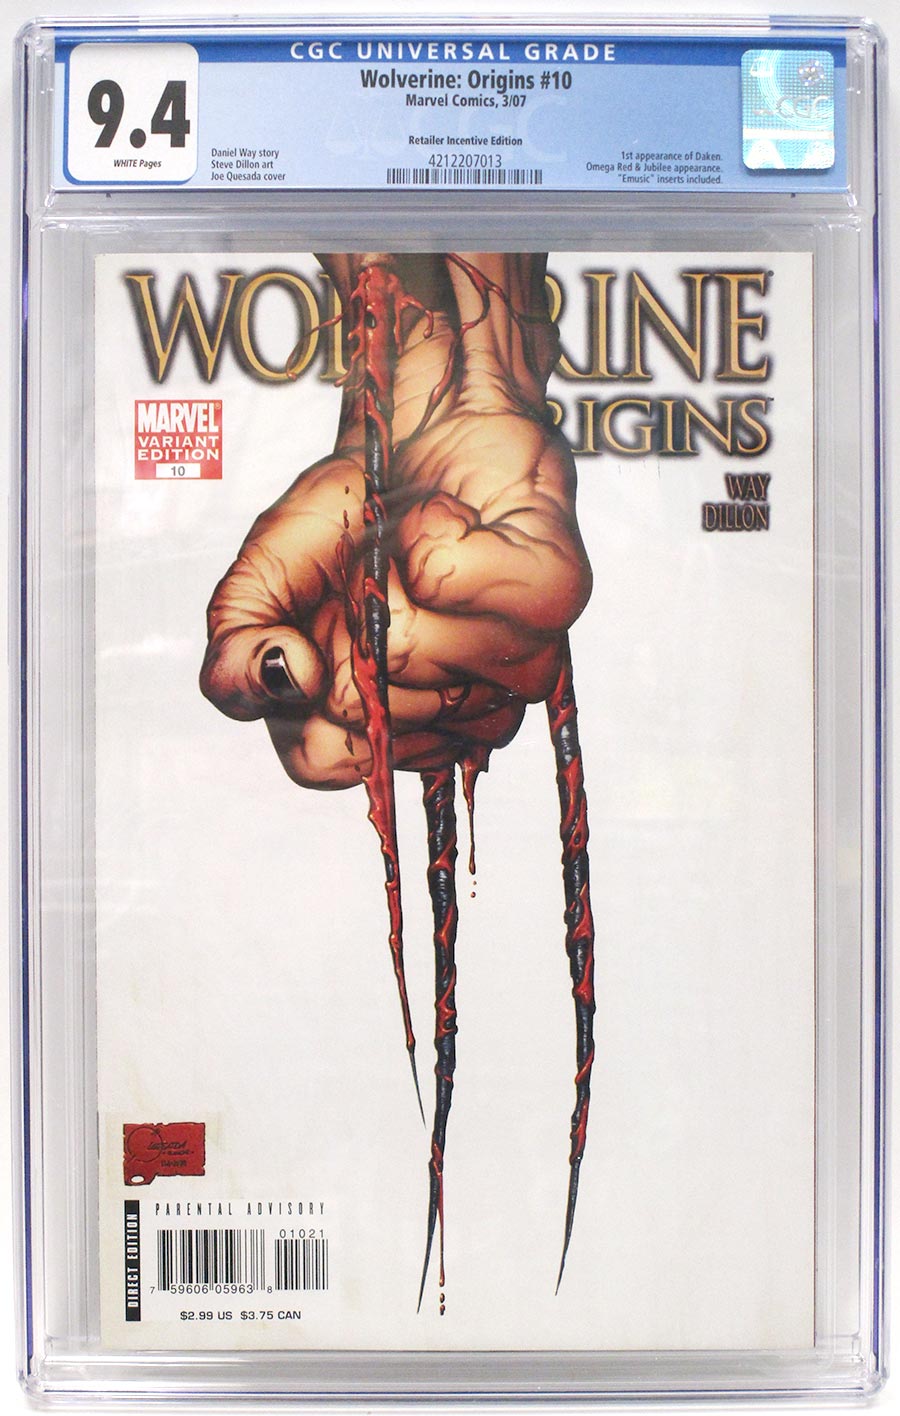 Wolverine Origins #10 Cover E Incentive Variant Cover CGC 9.4